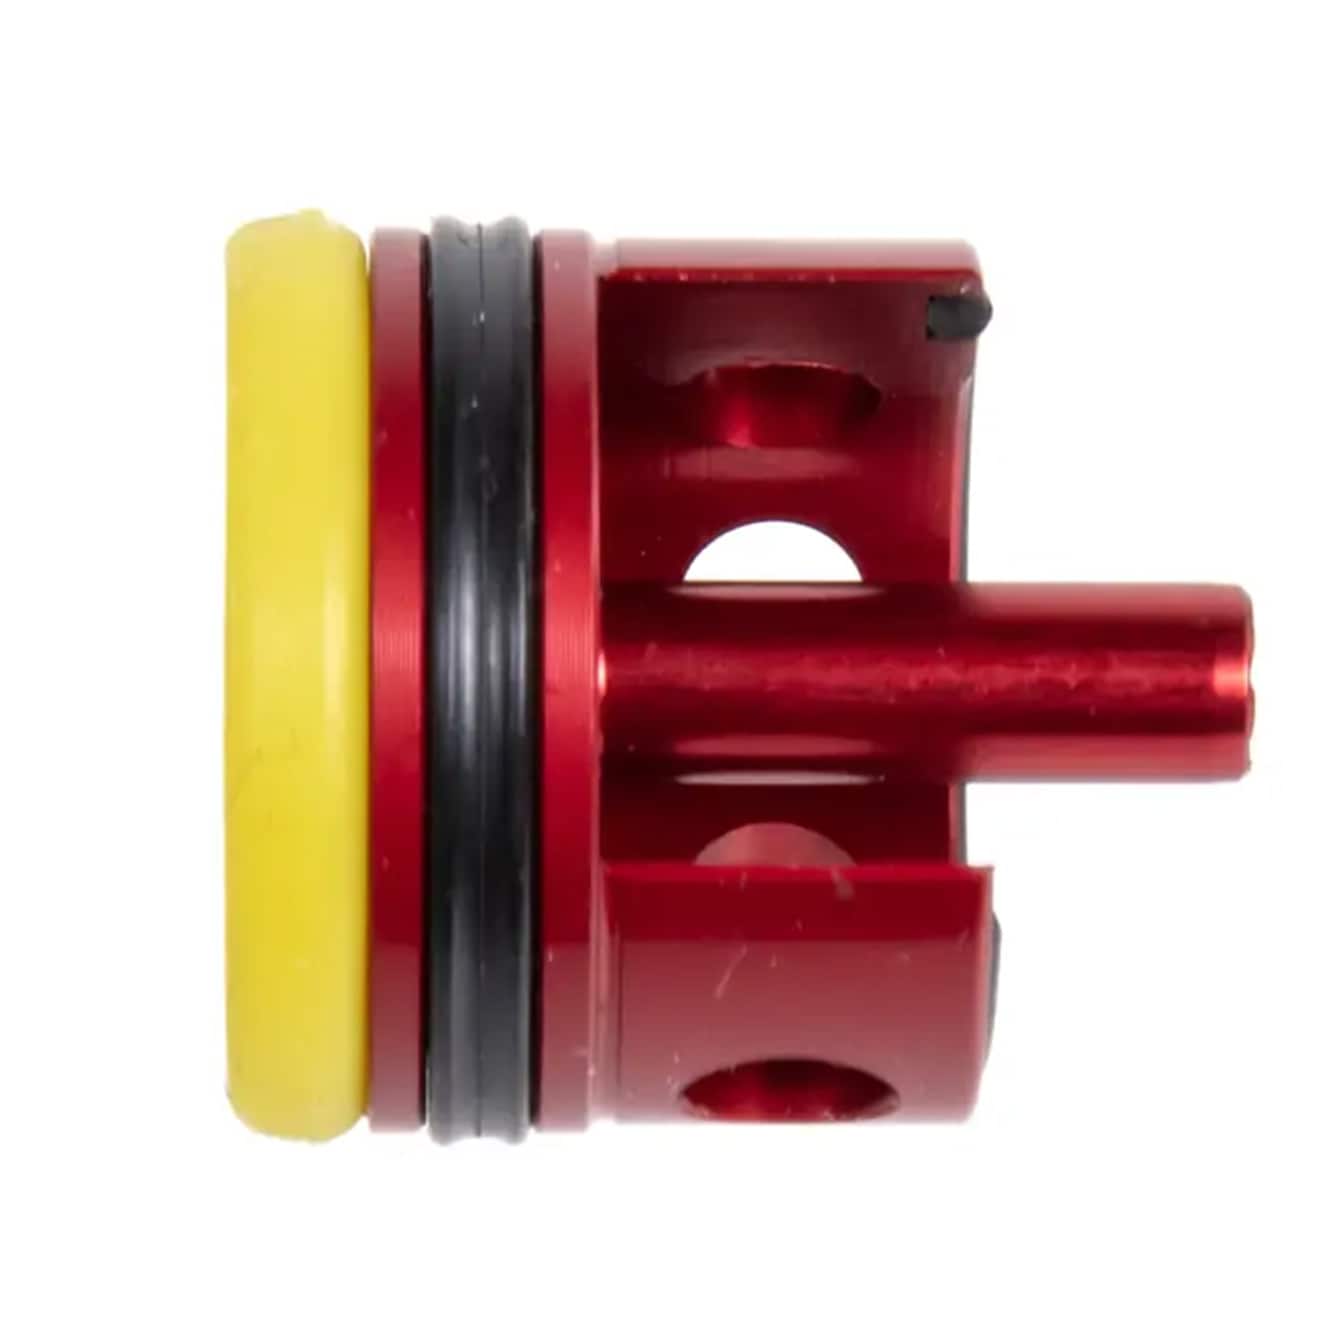 Głowica cylindra TopMax ERGAL CNC - Czerwona/Żółta